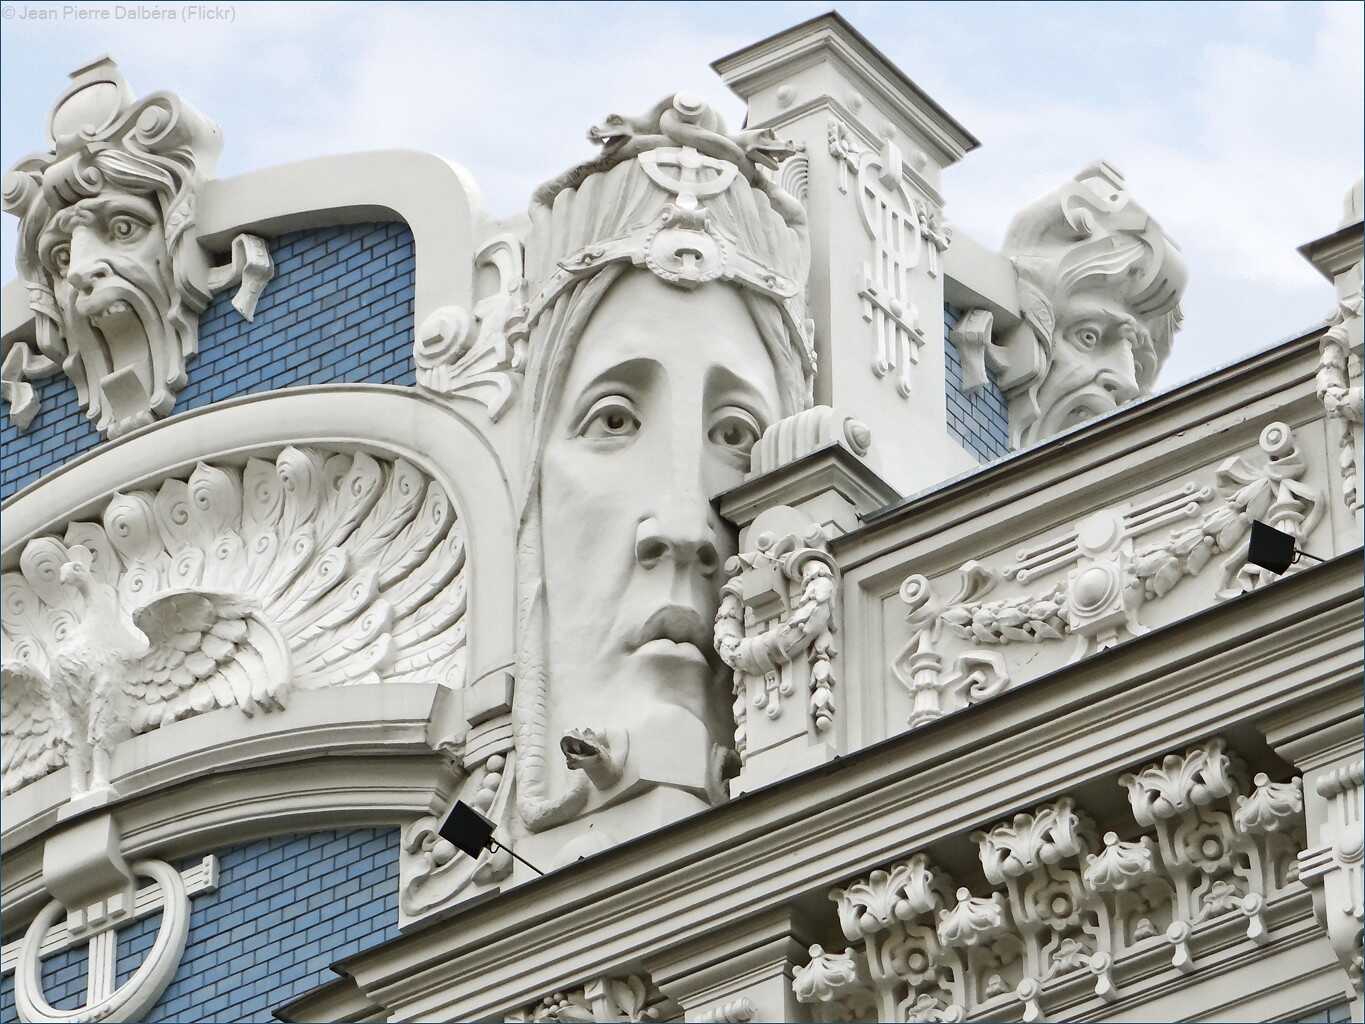 Immeuble art nouveau (Riga)